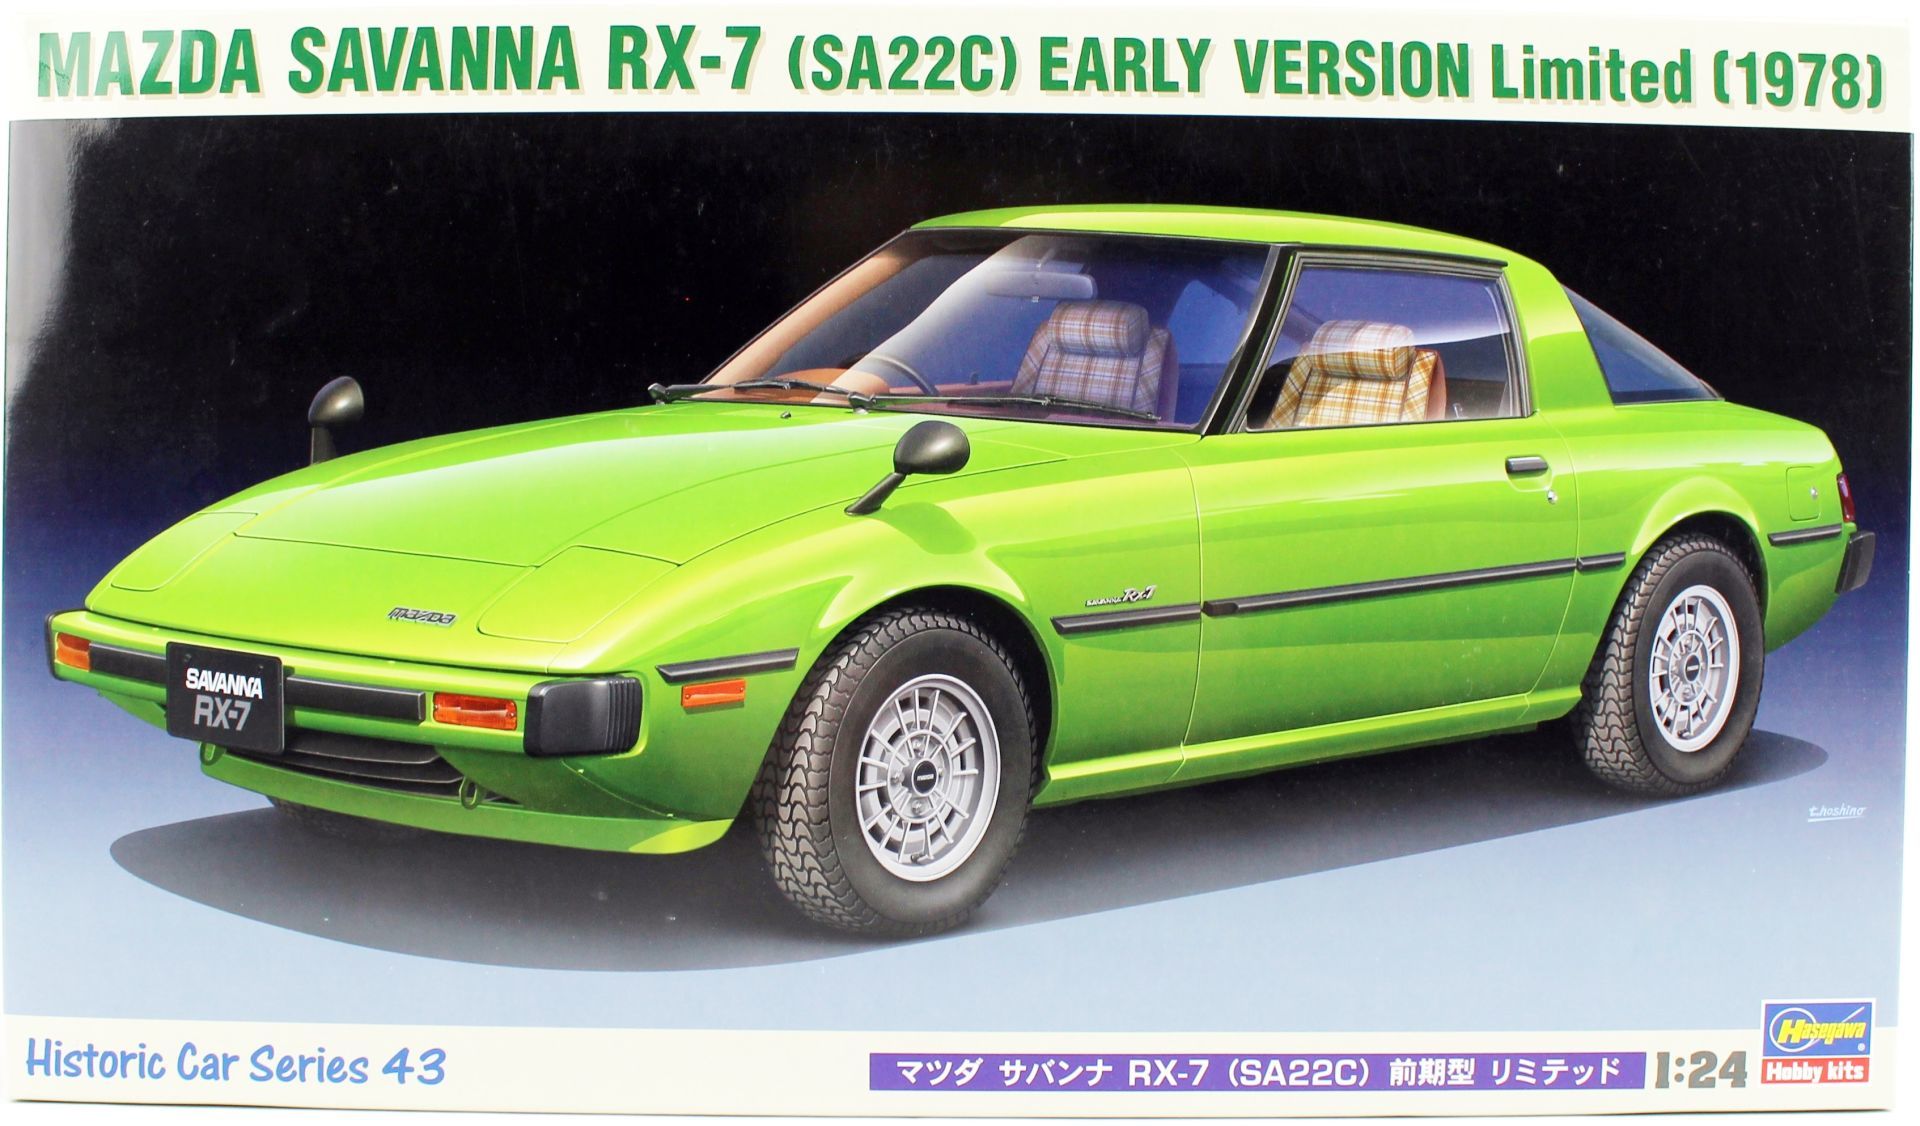 Hasegawa HC43 21143 1/24 Ölçek Mazda Savanna RX-7 (SA22C) Limited Otomobil Plastik Model Kiti